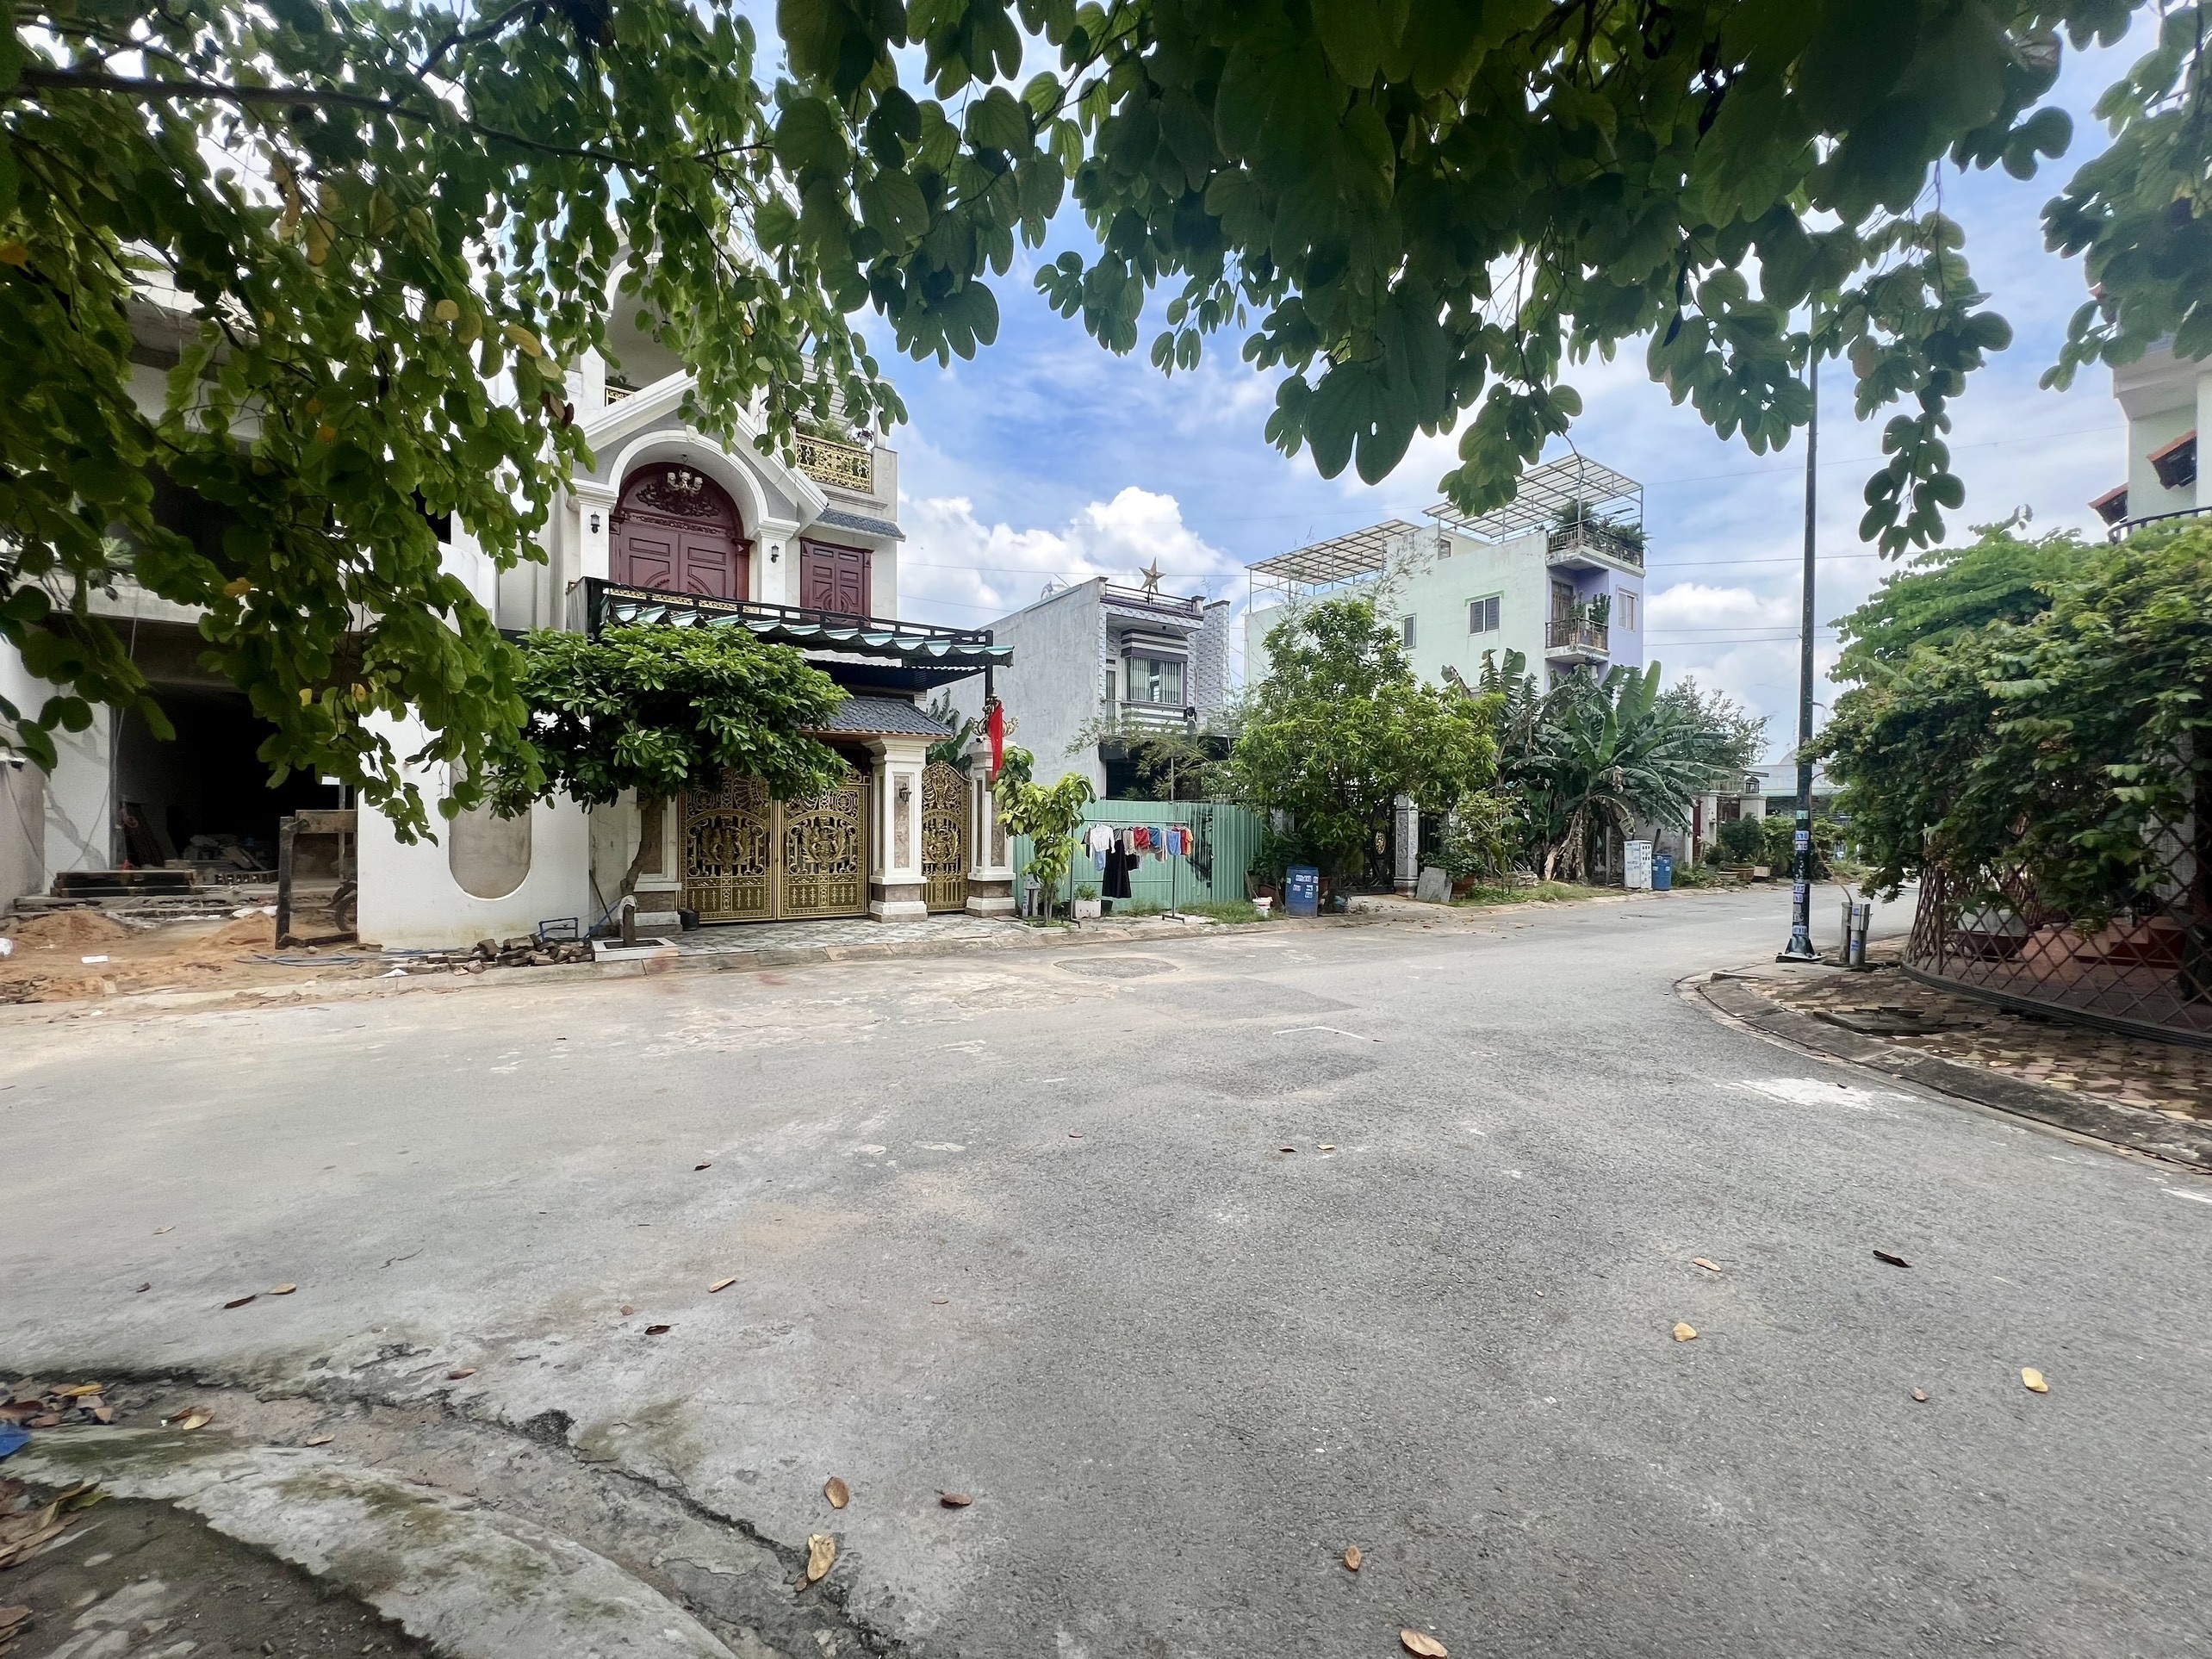 Bán đất Khu dân cư Vĩnh Phú 1, dân cư đông, kế bên khu căn hộ Marina, gần chợ, siêu thị, bệnh viện 7